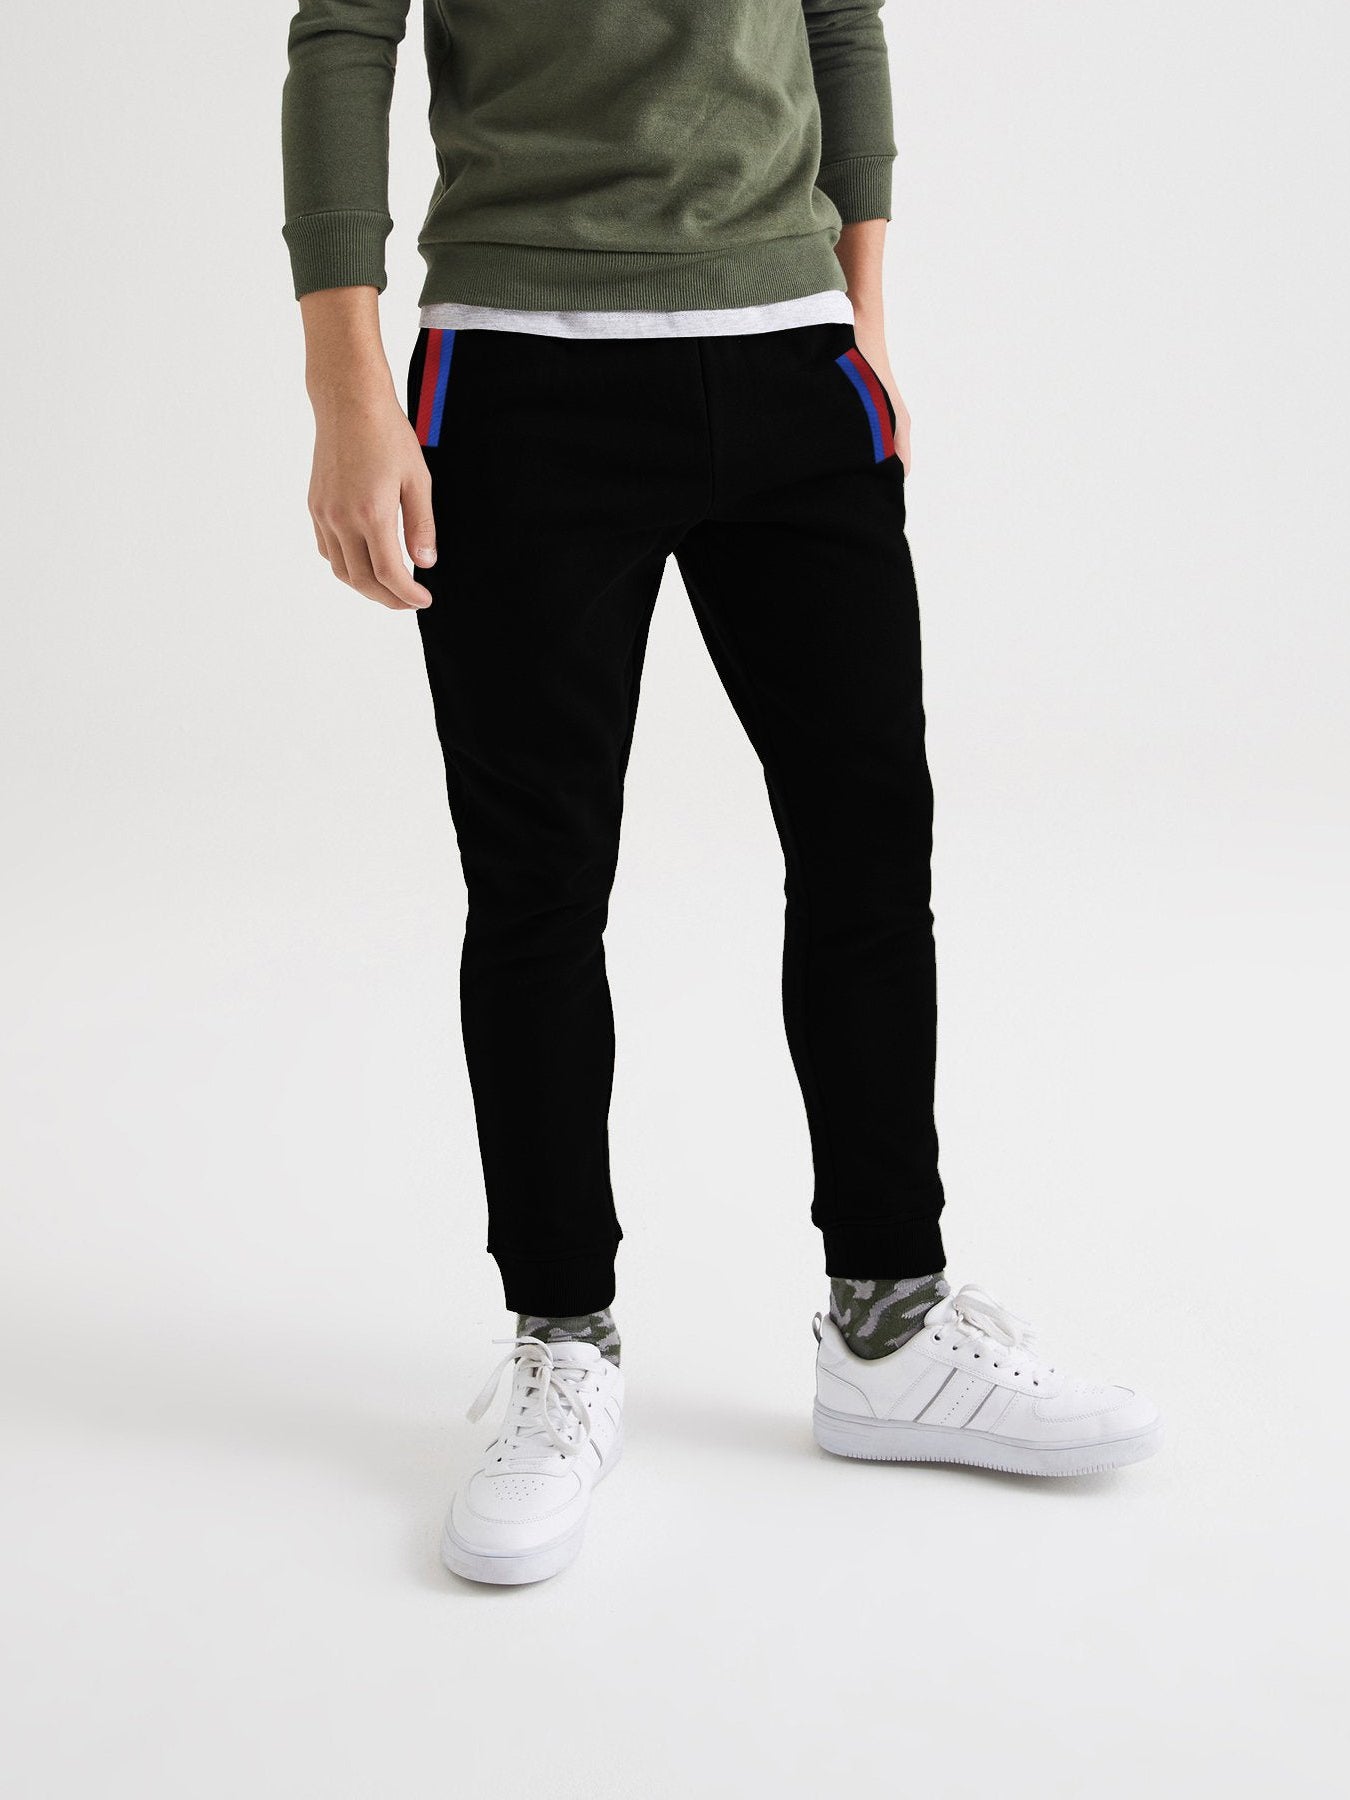 ADS Fleece Slim Fit Jogger Trouser For Kids-Black-RT1452